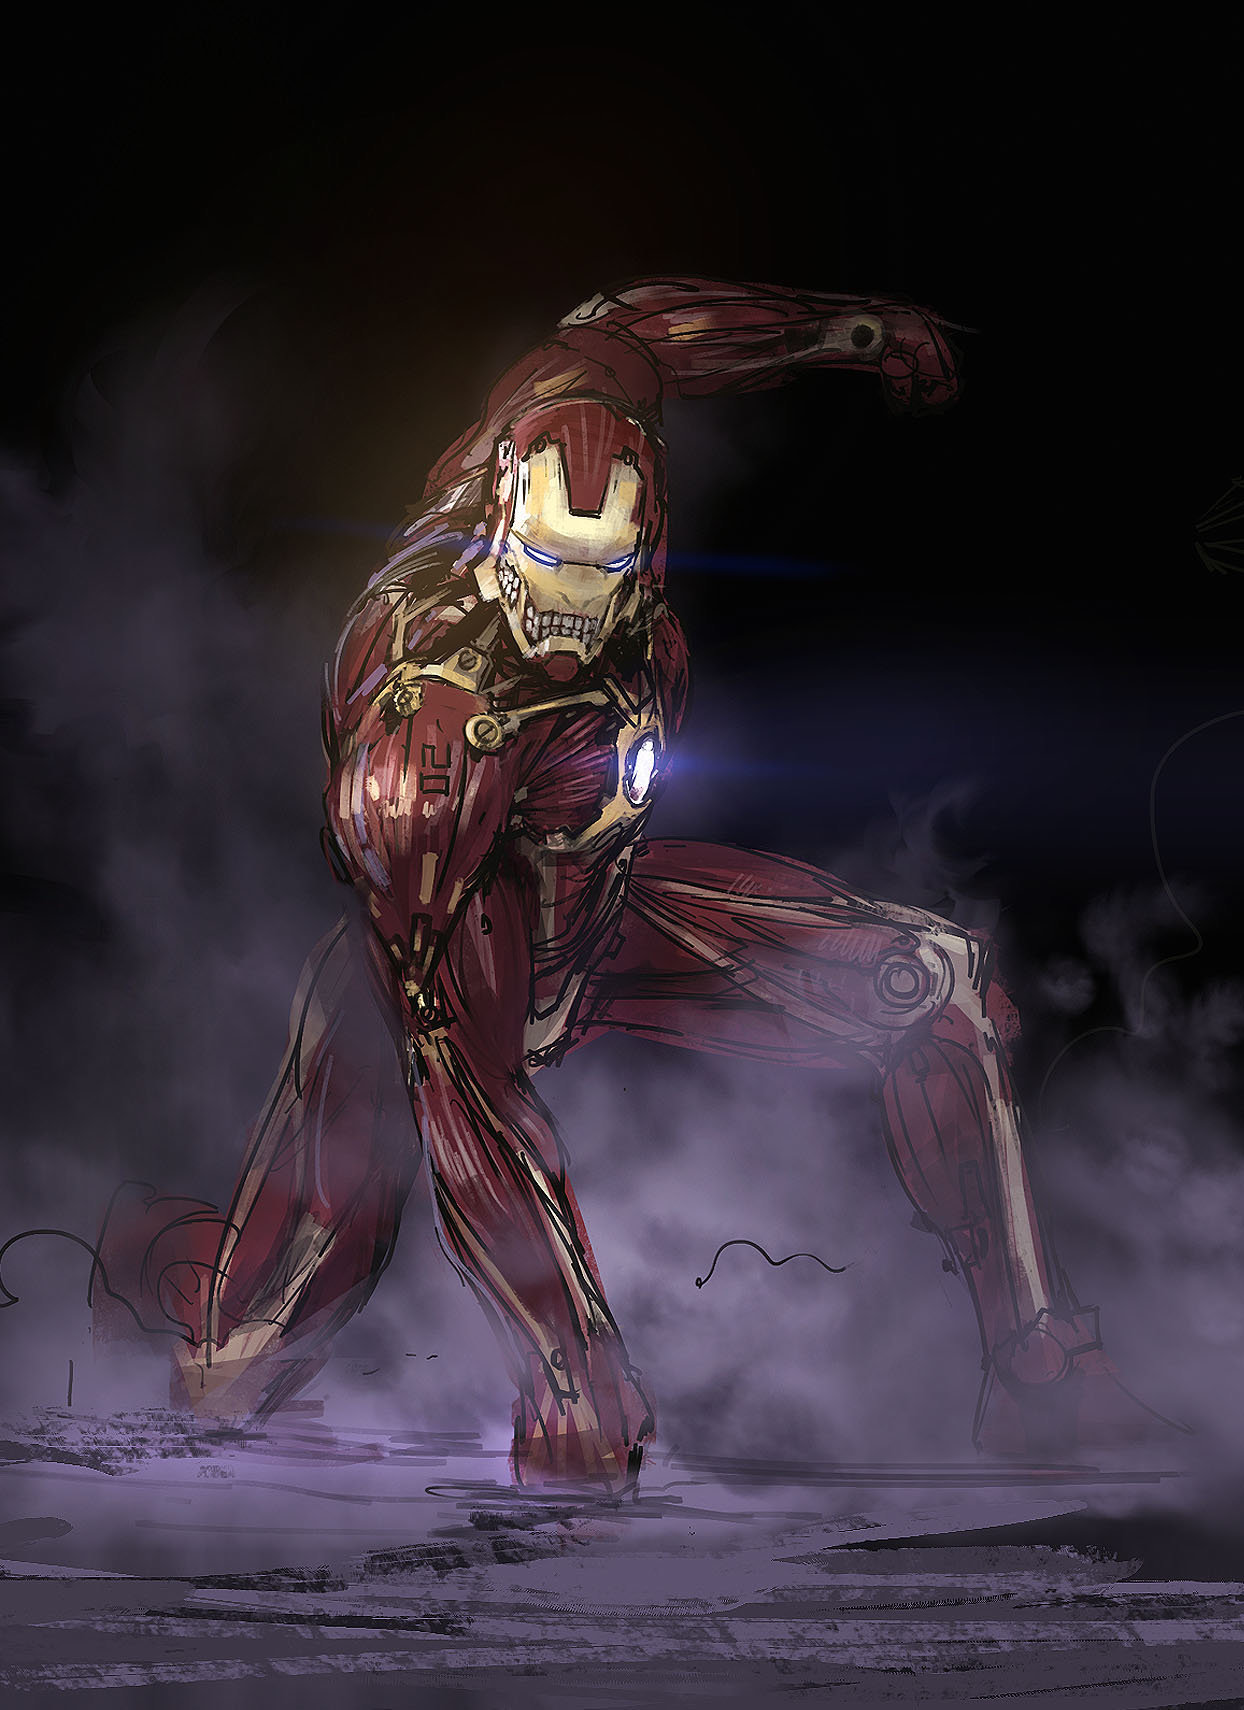 The Iron Titan